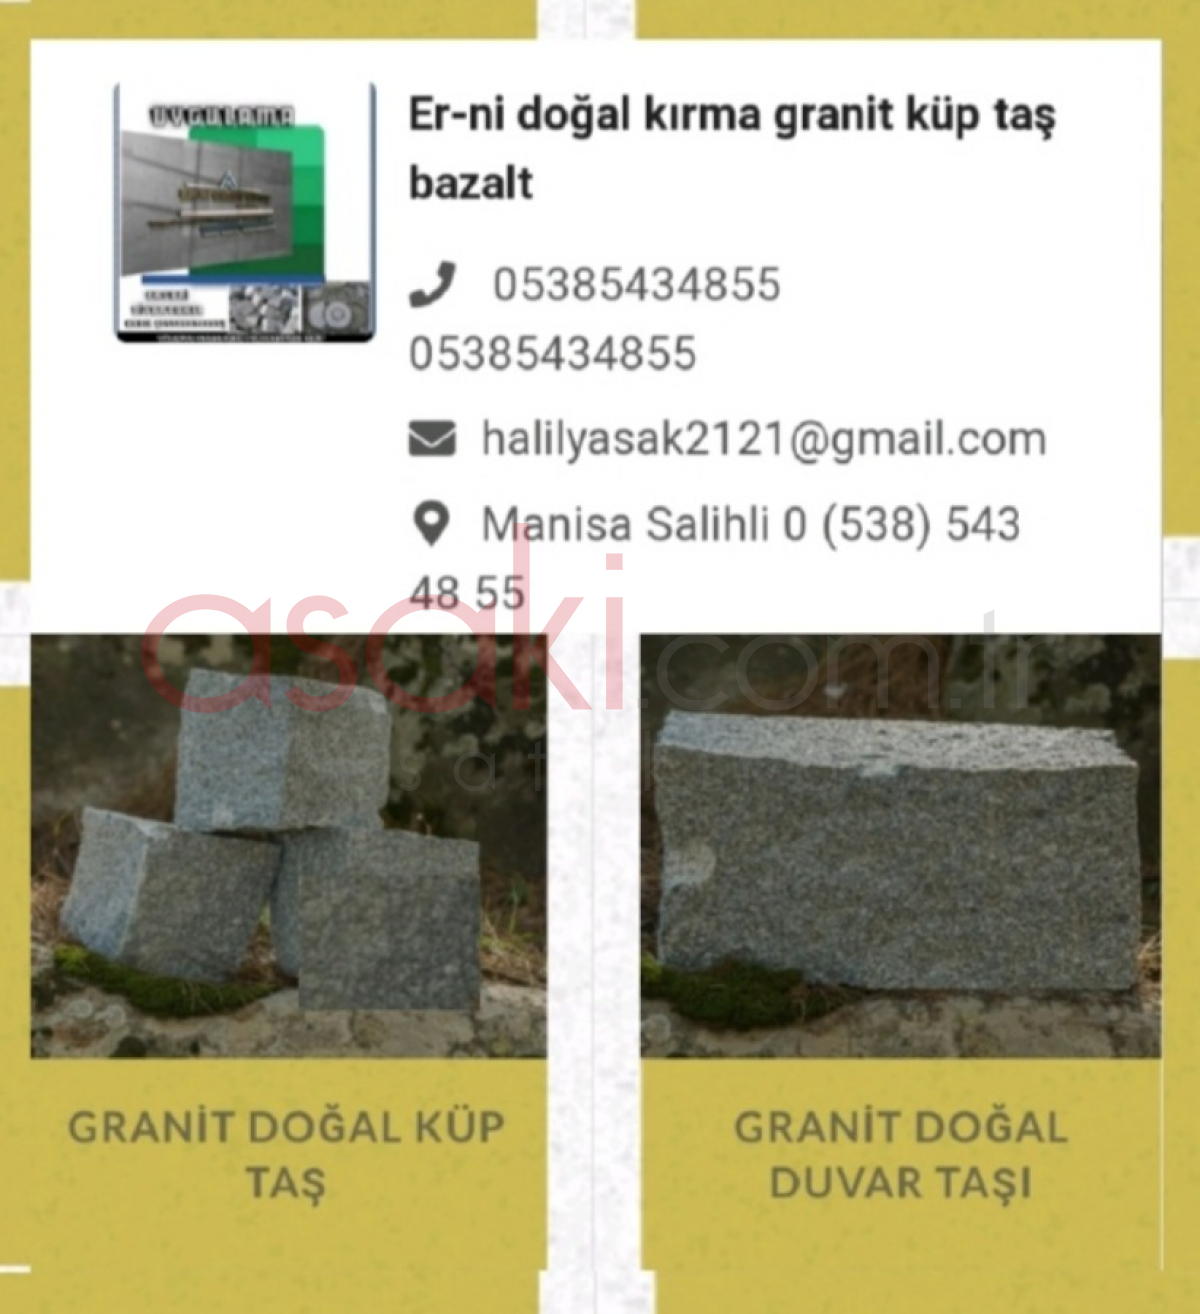 Er-ni granit küp taş uygulama ekibi İzmir - Büyük 5